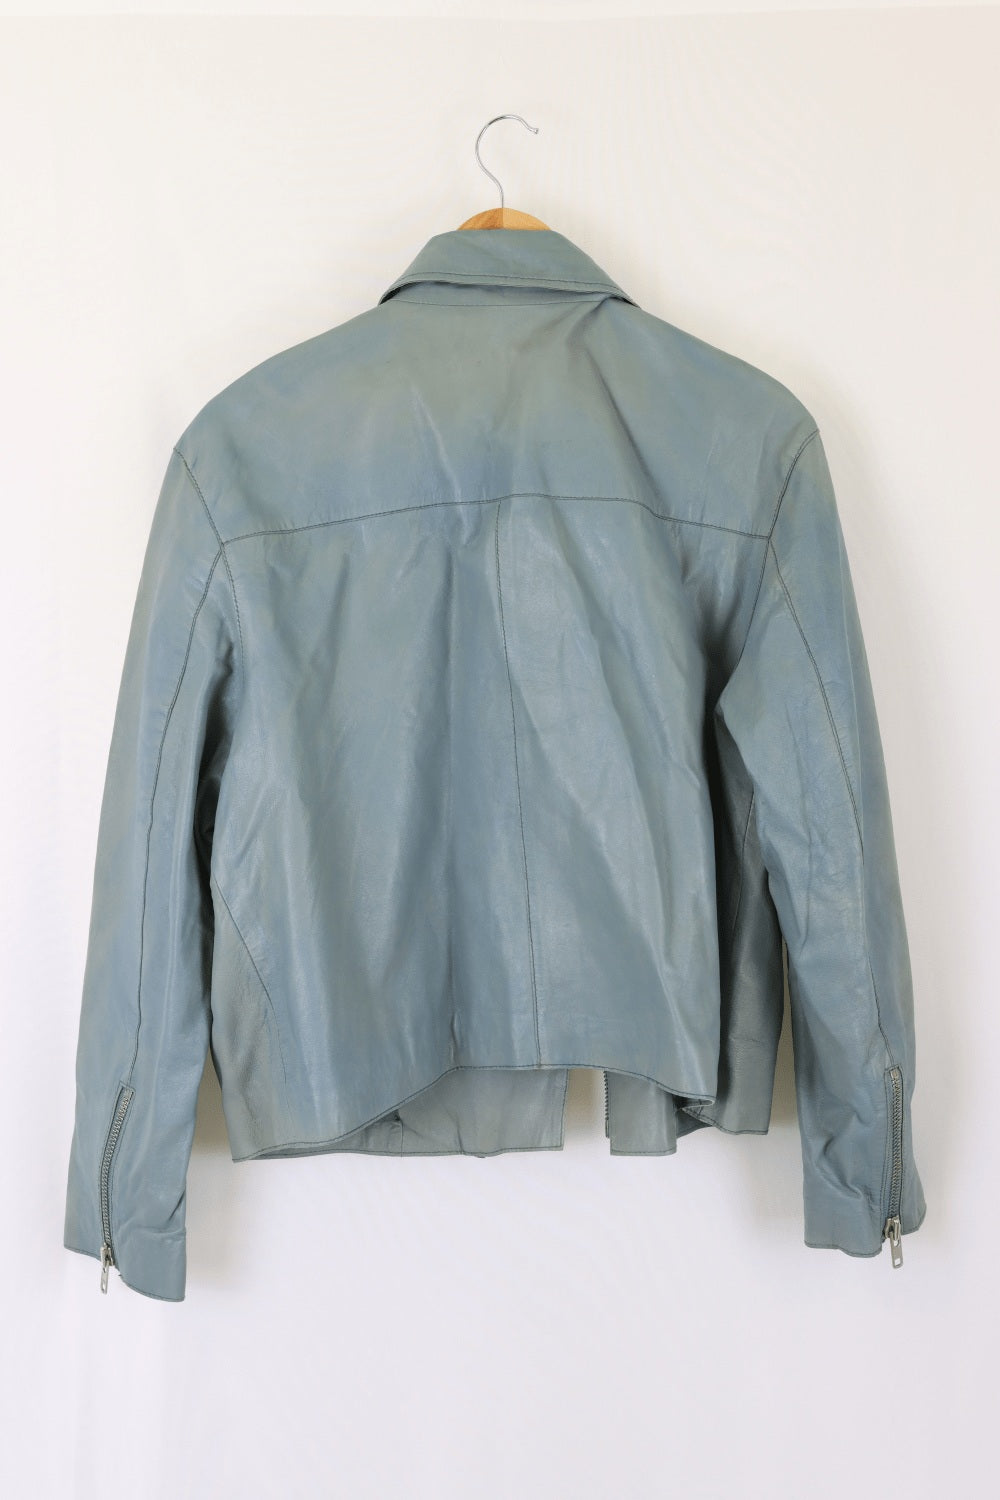 Asos Blue Leather Jacket 16